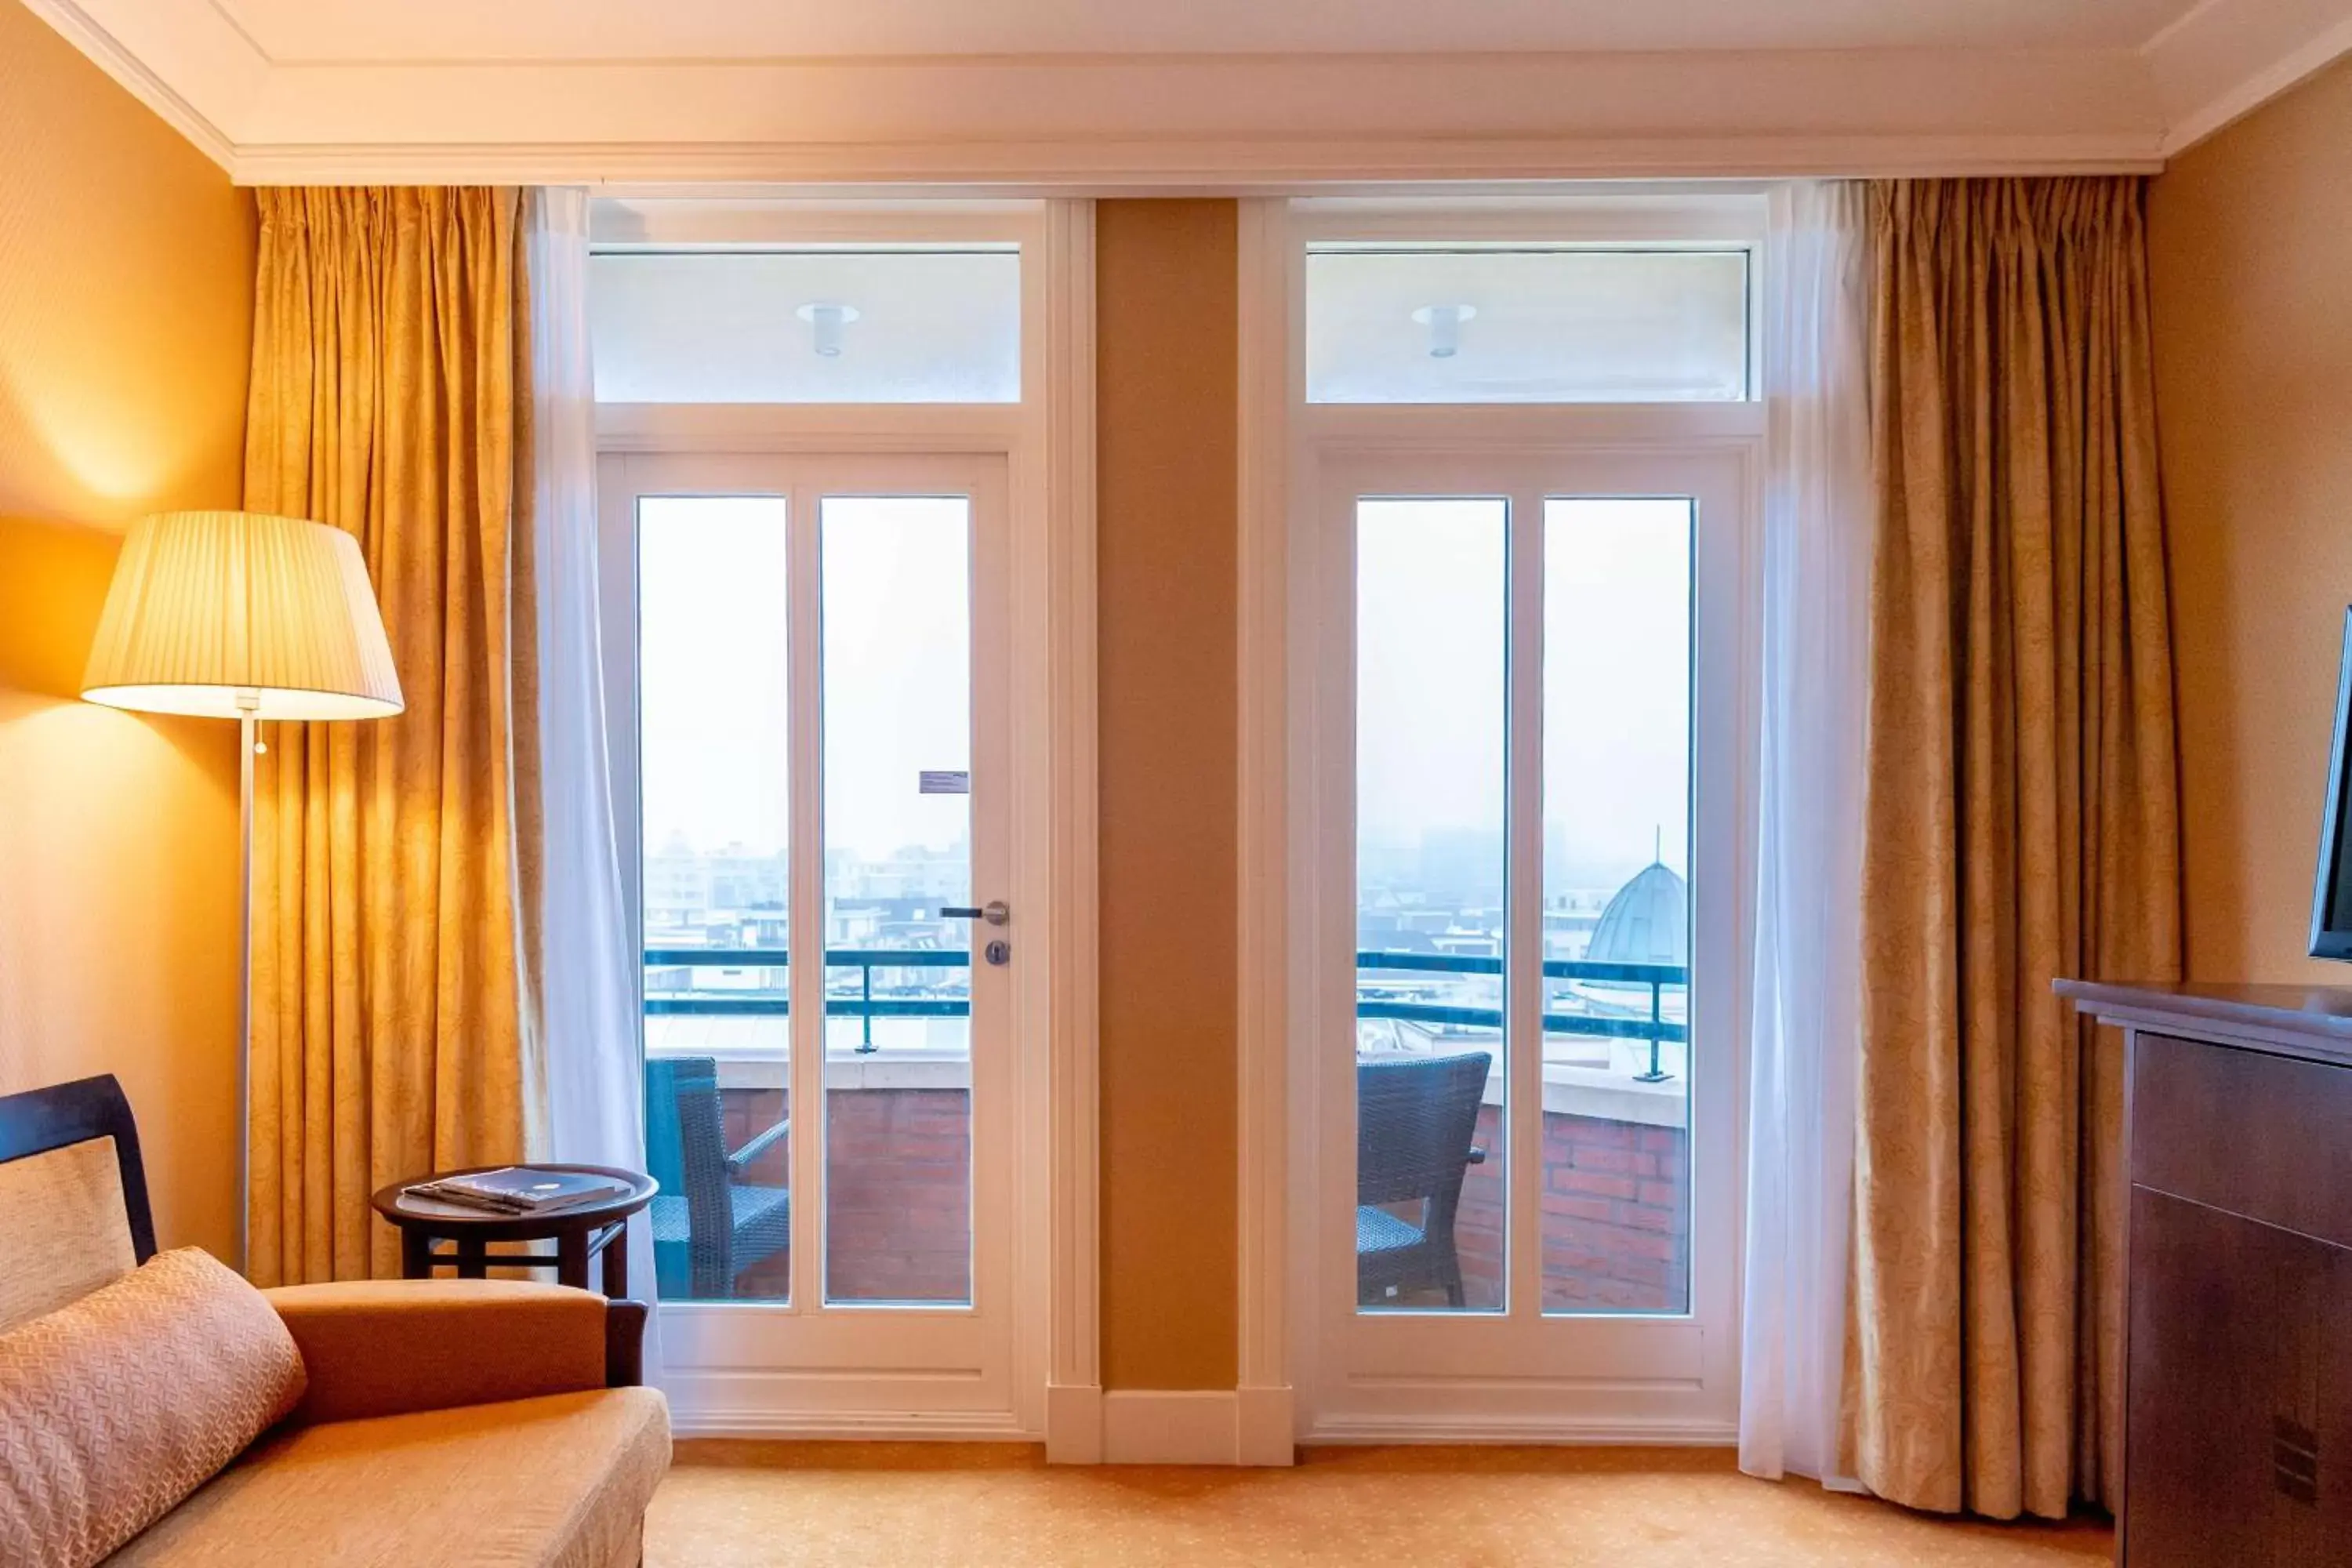 View (from property/room) in Van der Valk Palace Hotel Noordwijk